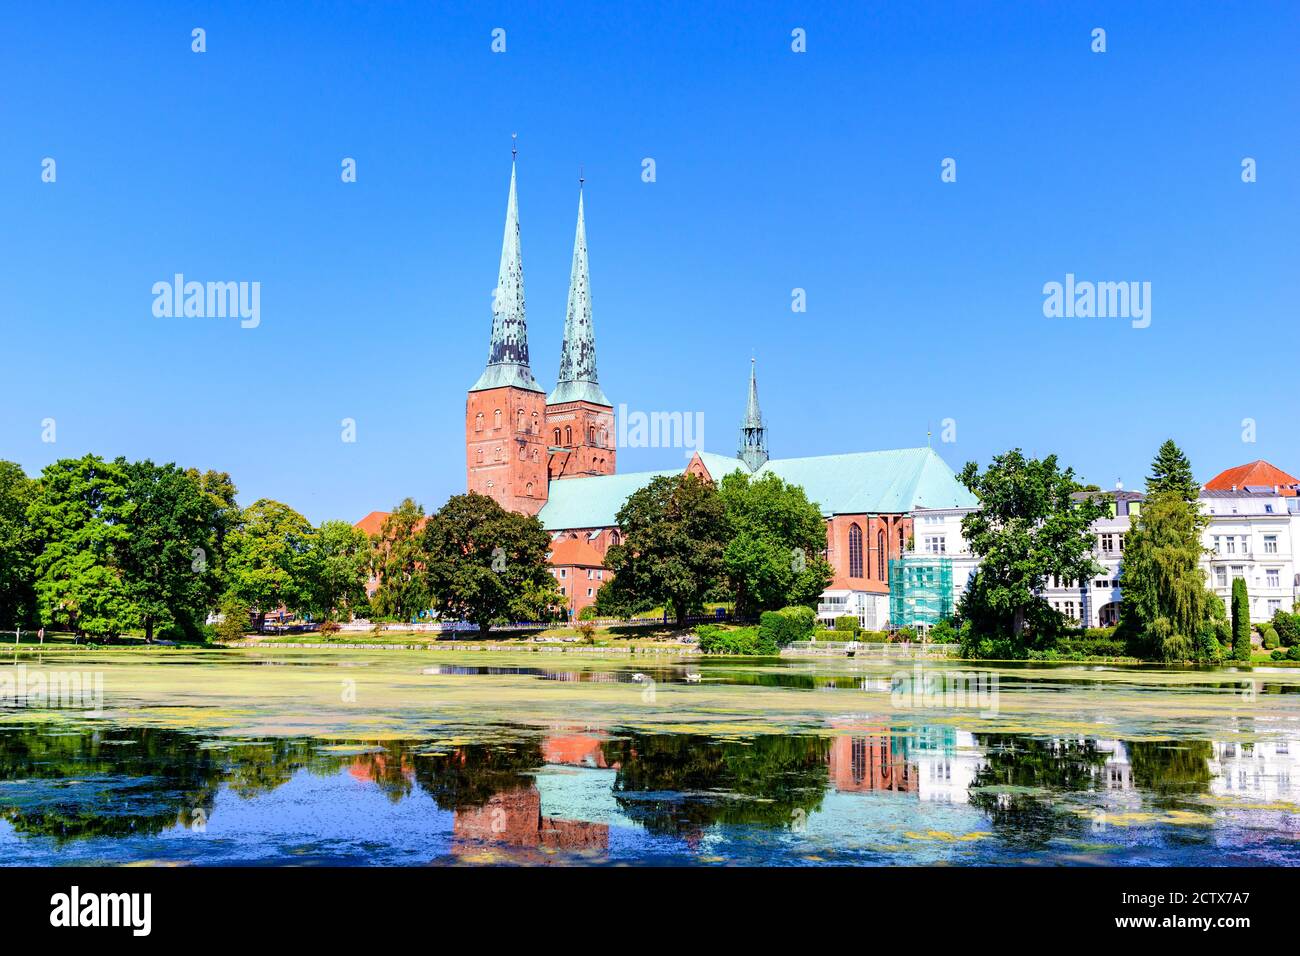 Eglise catherdale (Dom) avec un lac, ciel bleu à Lubeck (Lübeck), Schleswig-Holstein, Allemagne Banque D'Images